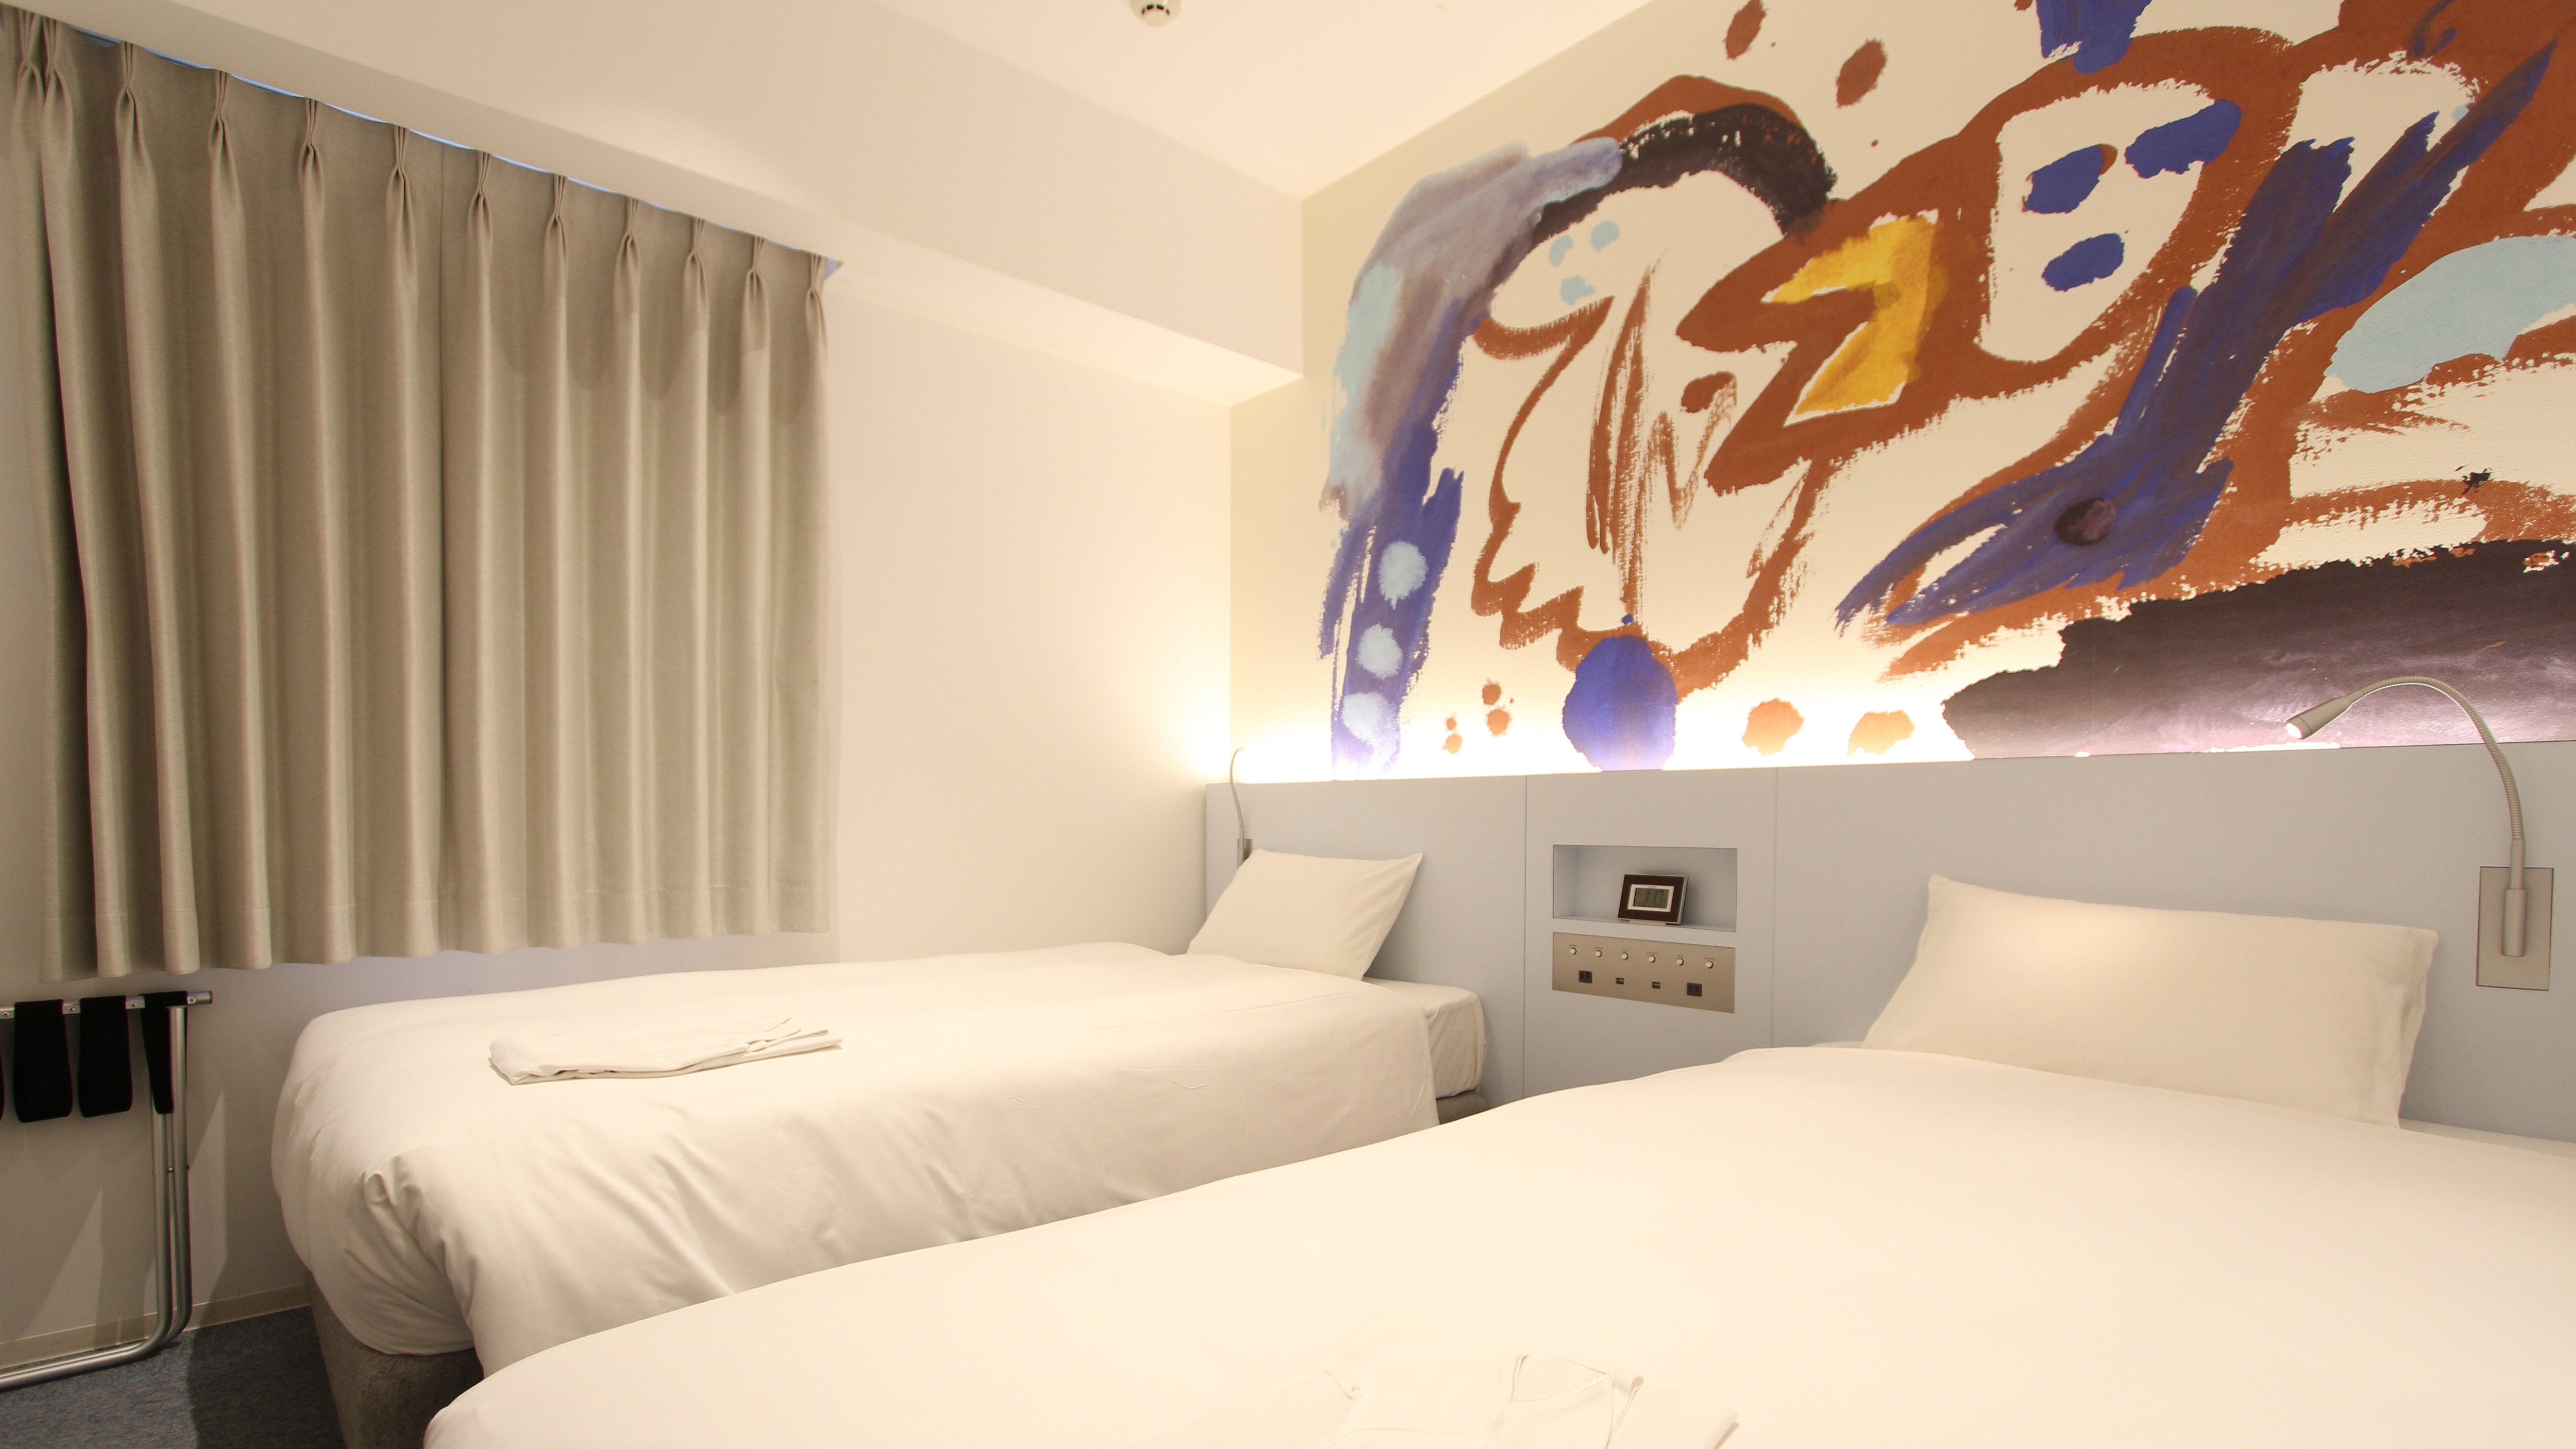 เตียงแฝดขนาดกลาง * การออกแบบงานศิลปะแตกต่างกันไปขึ้นอยู่กับห้องพัก